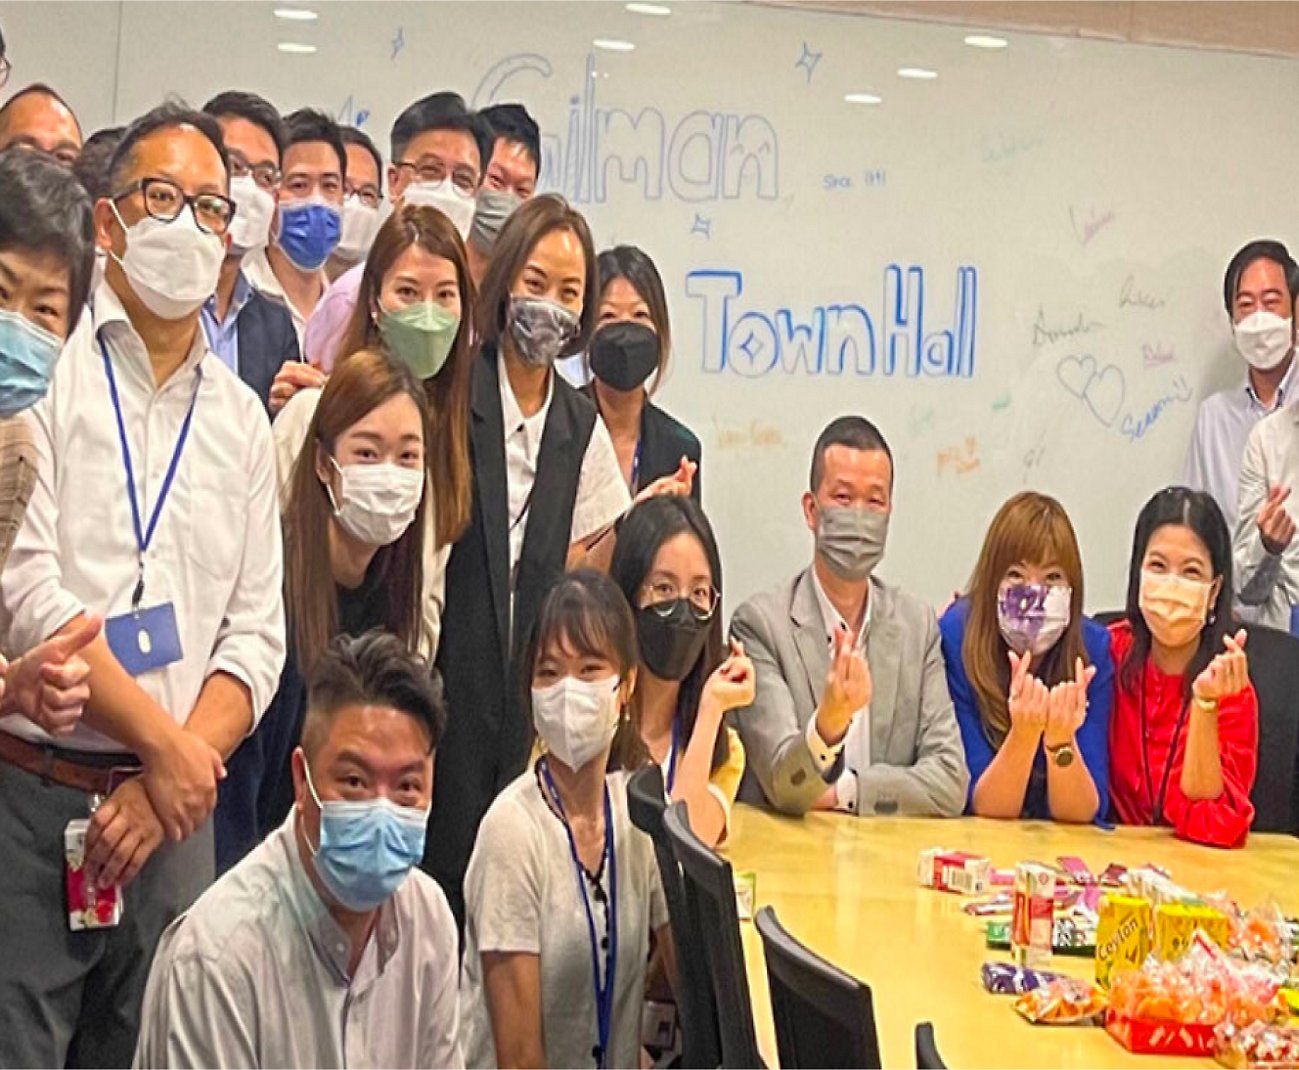 Um grupo de pessoas posando para uma foto usando máscaras de rosto.